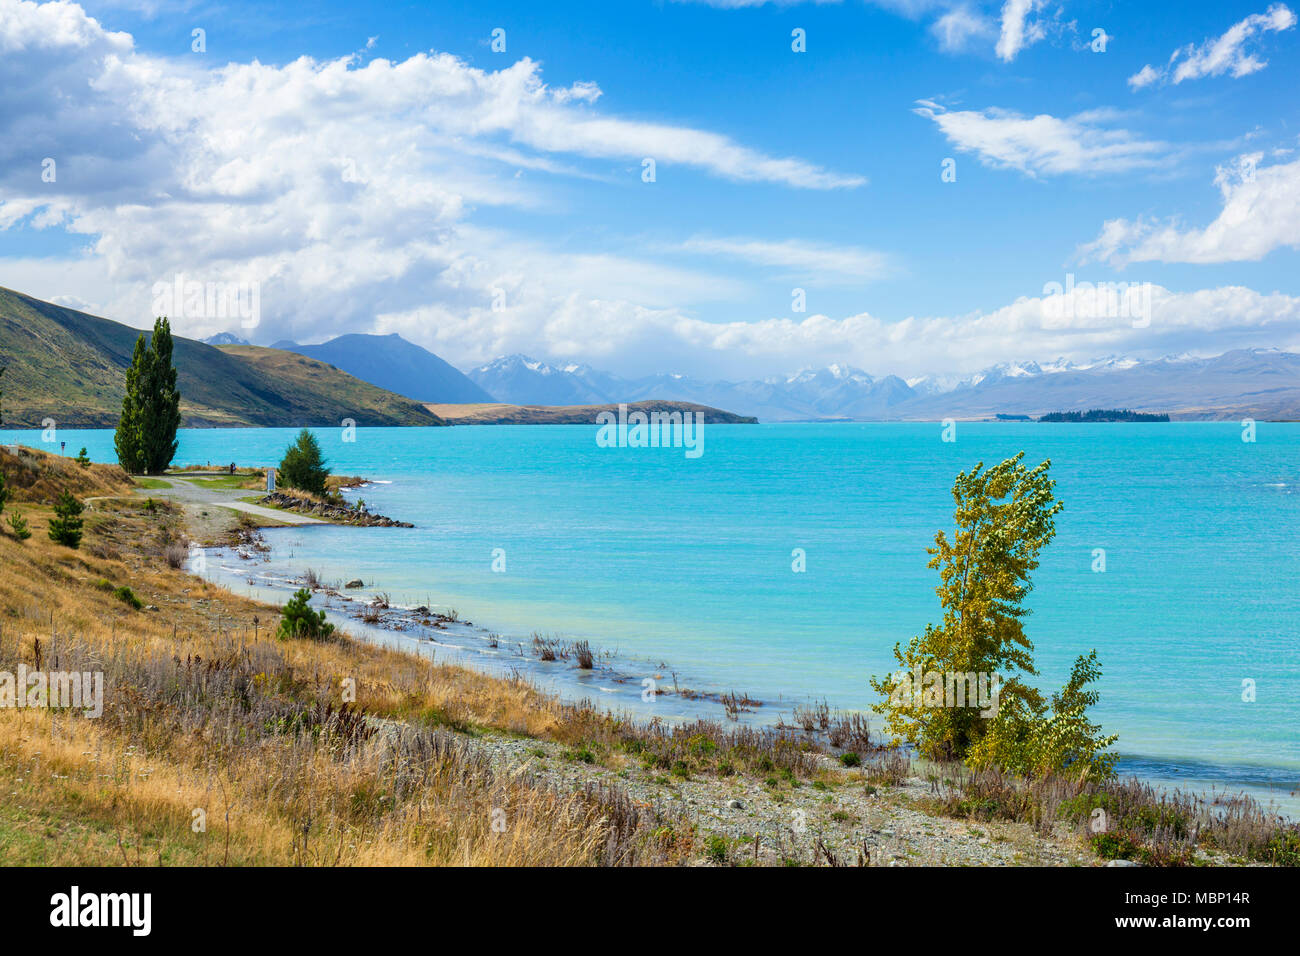 La Nouvelle-Zélande île du Sud Nouvelle-Zélande rive du lac glaciaire tekapo mackenzie district région canterbury NZ Nouvelle-Zélande Banque D'Images